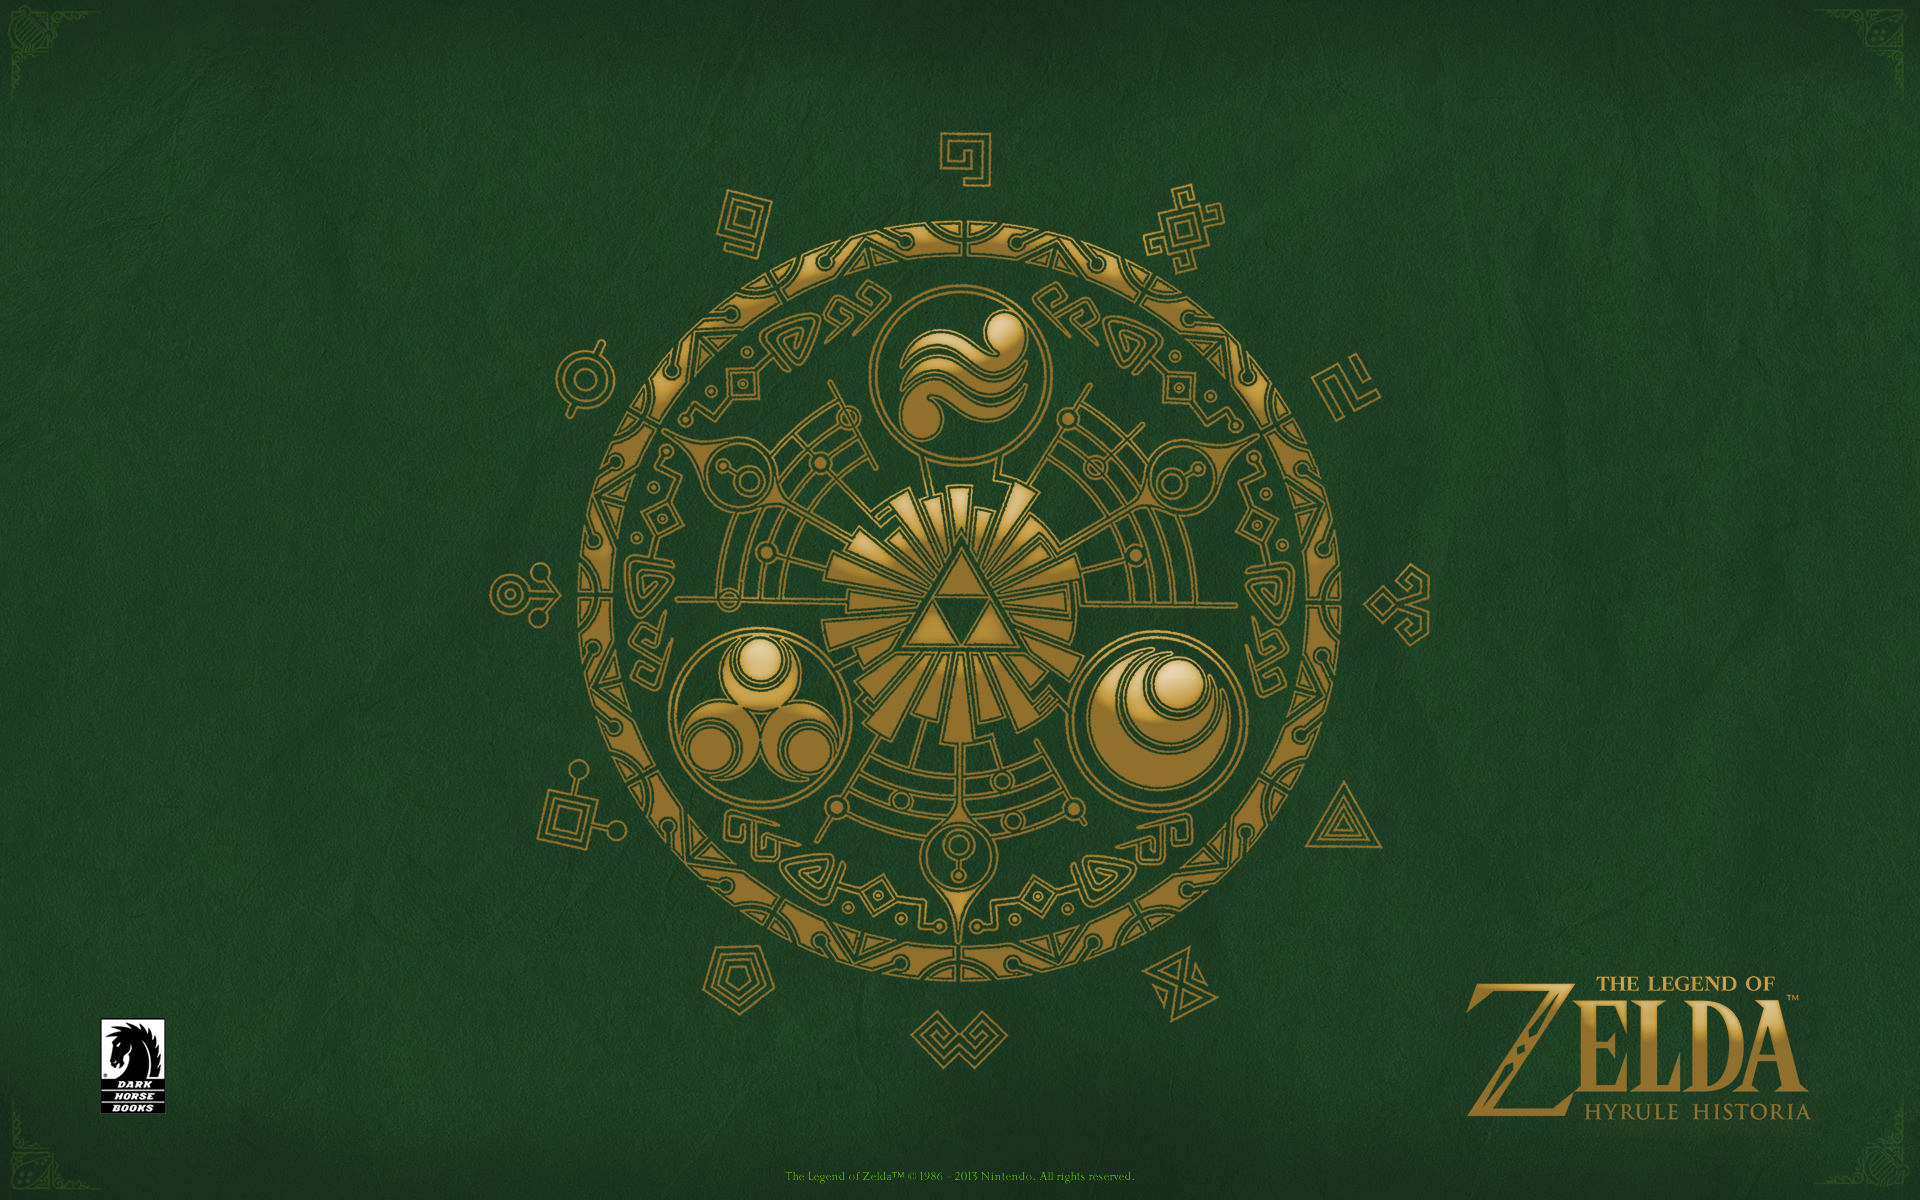 The Legend Of Zelda Desktops Dark Horse Ics